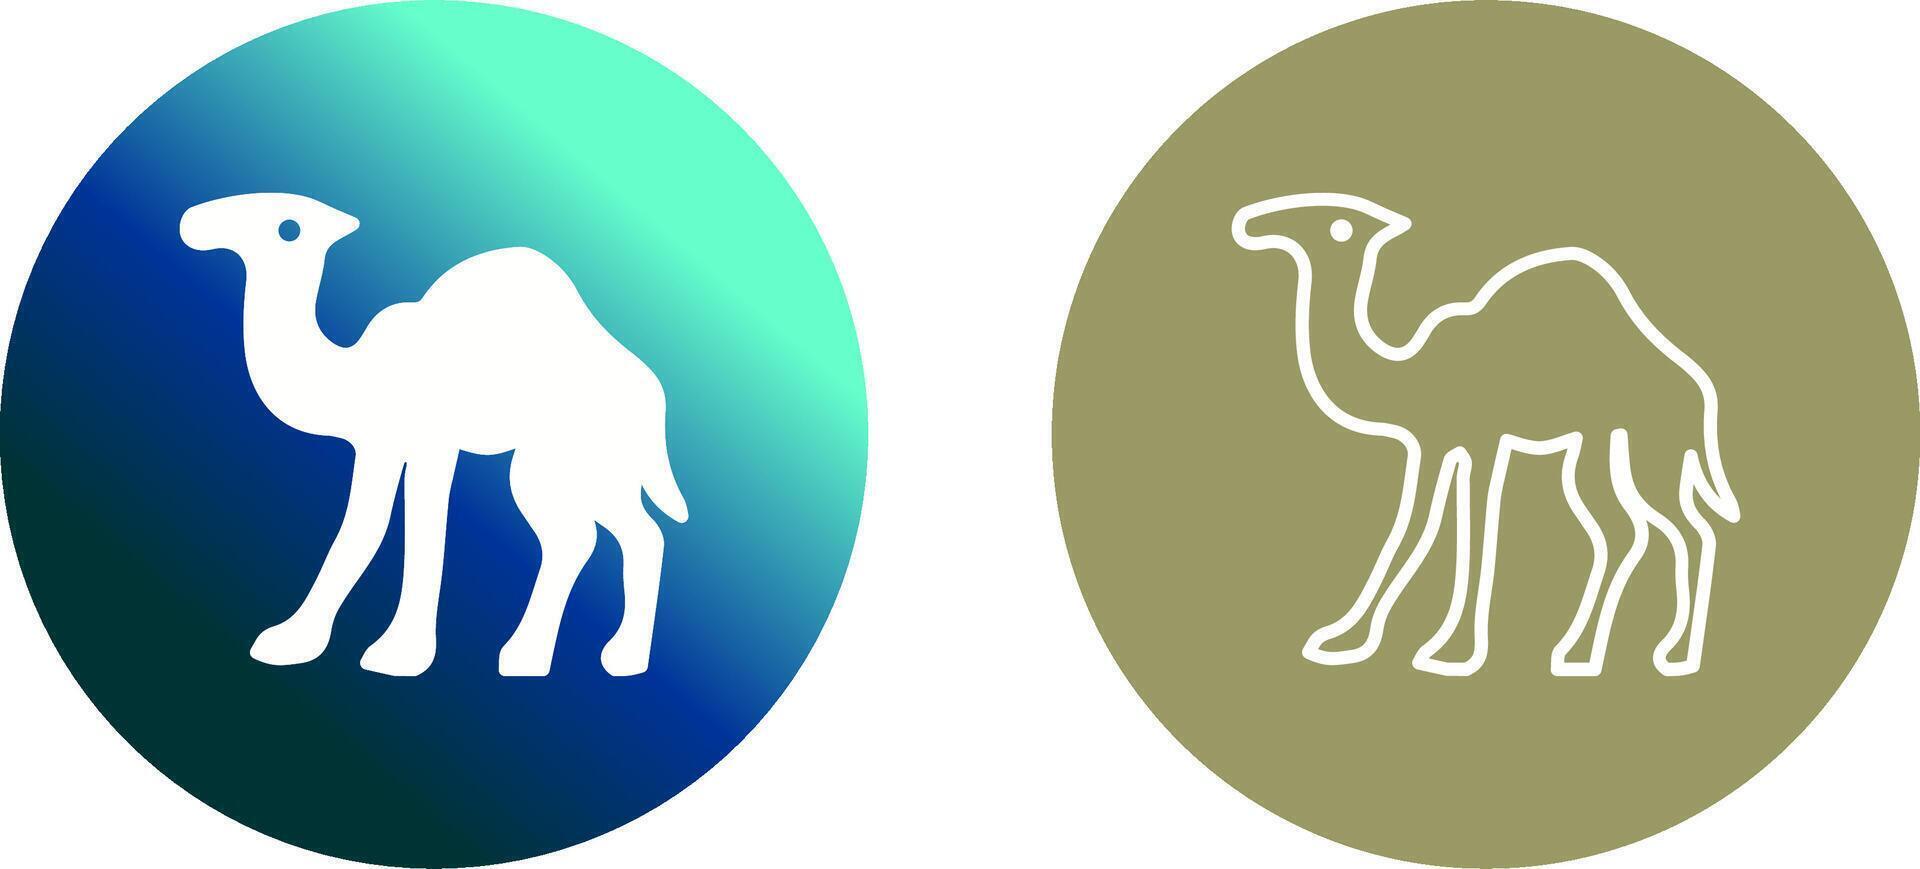 design de ícone de camelo vetor